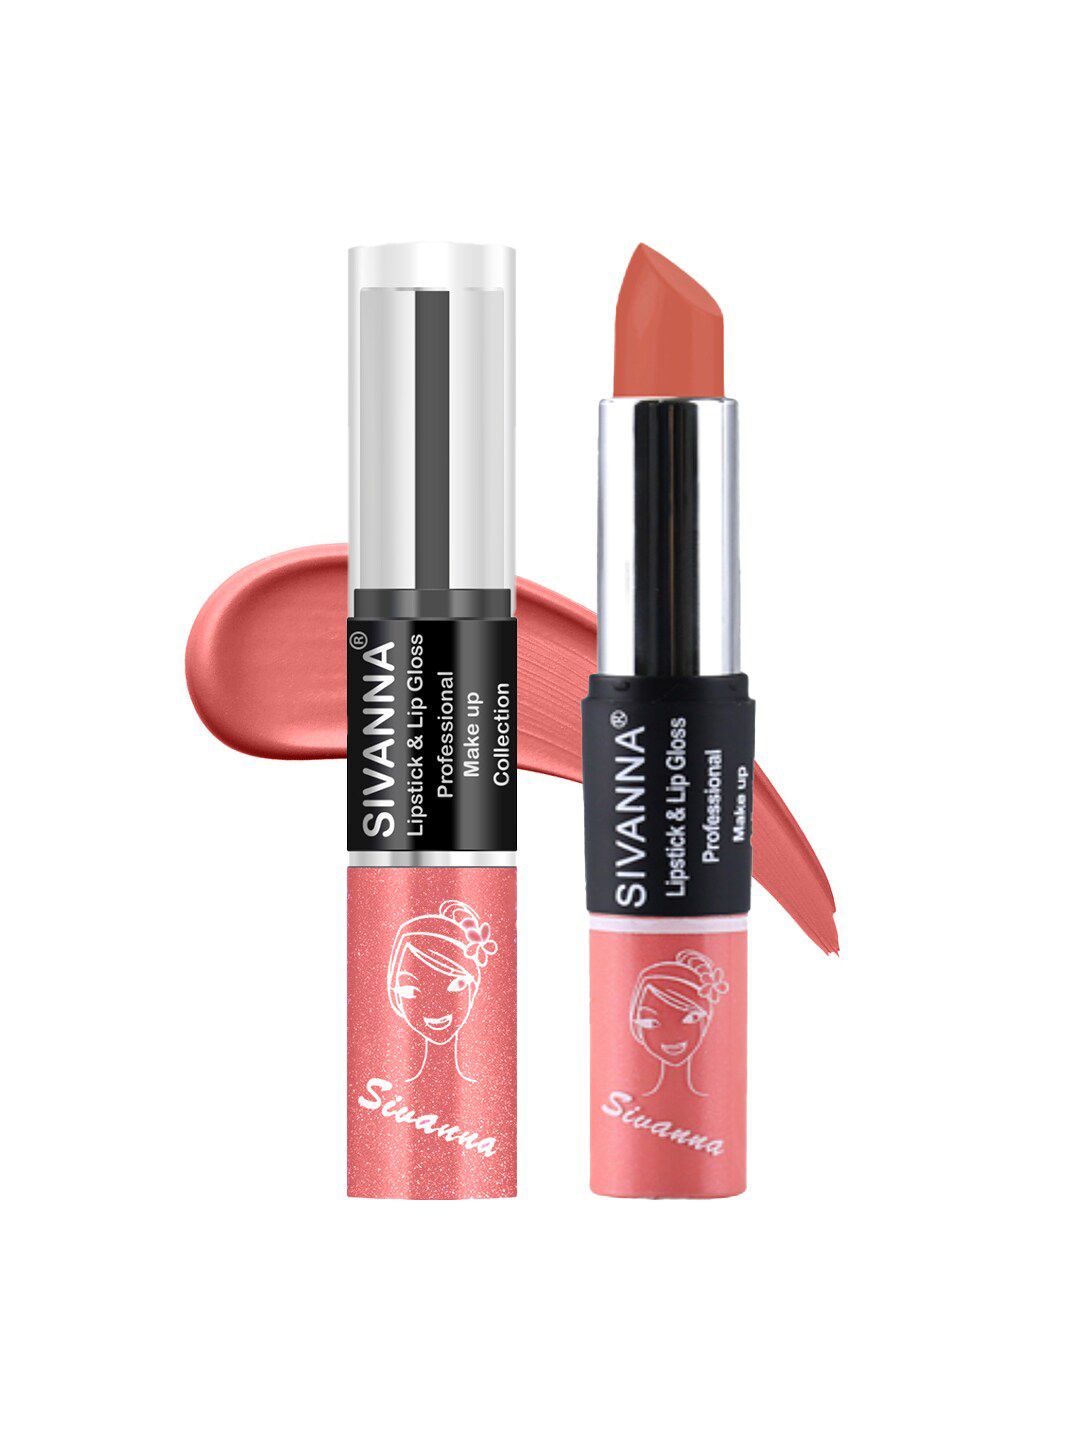 Sivanna Colors 2 in 1 Lipstick & Lip Gloss - DK061 28 Price in India